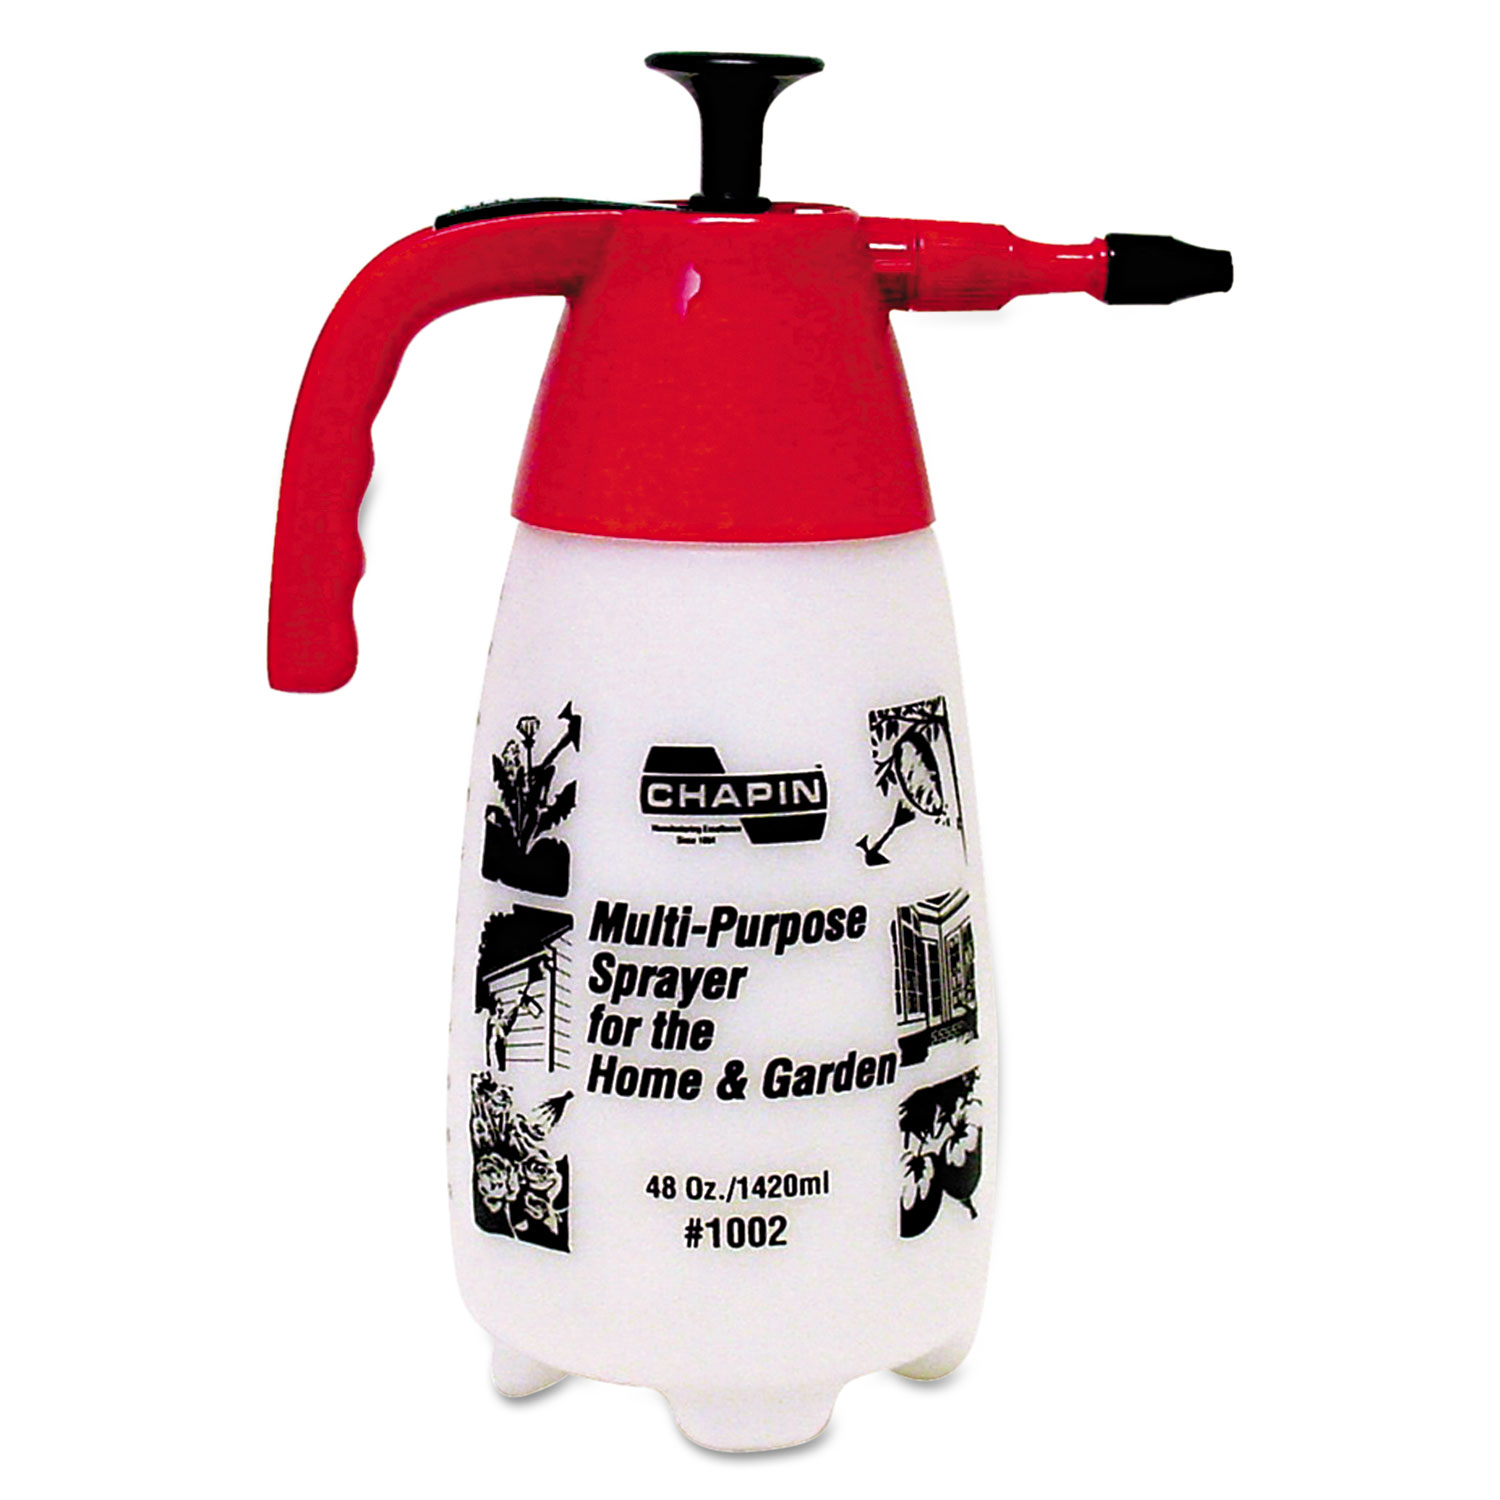 Multi-Purpose Sprayer, 48oz.